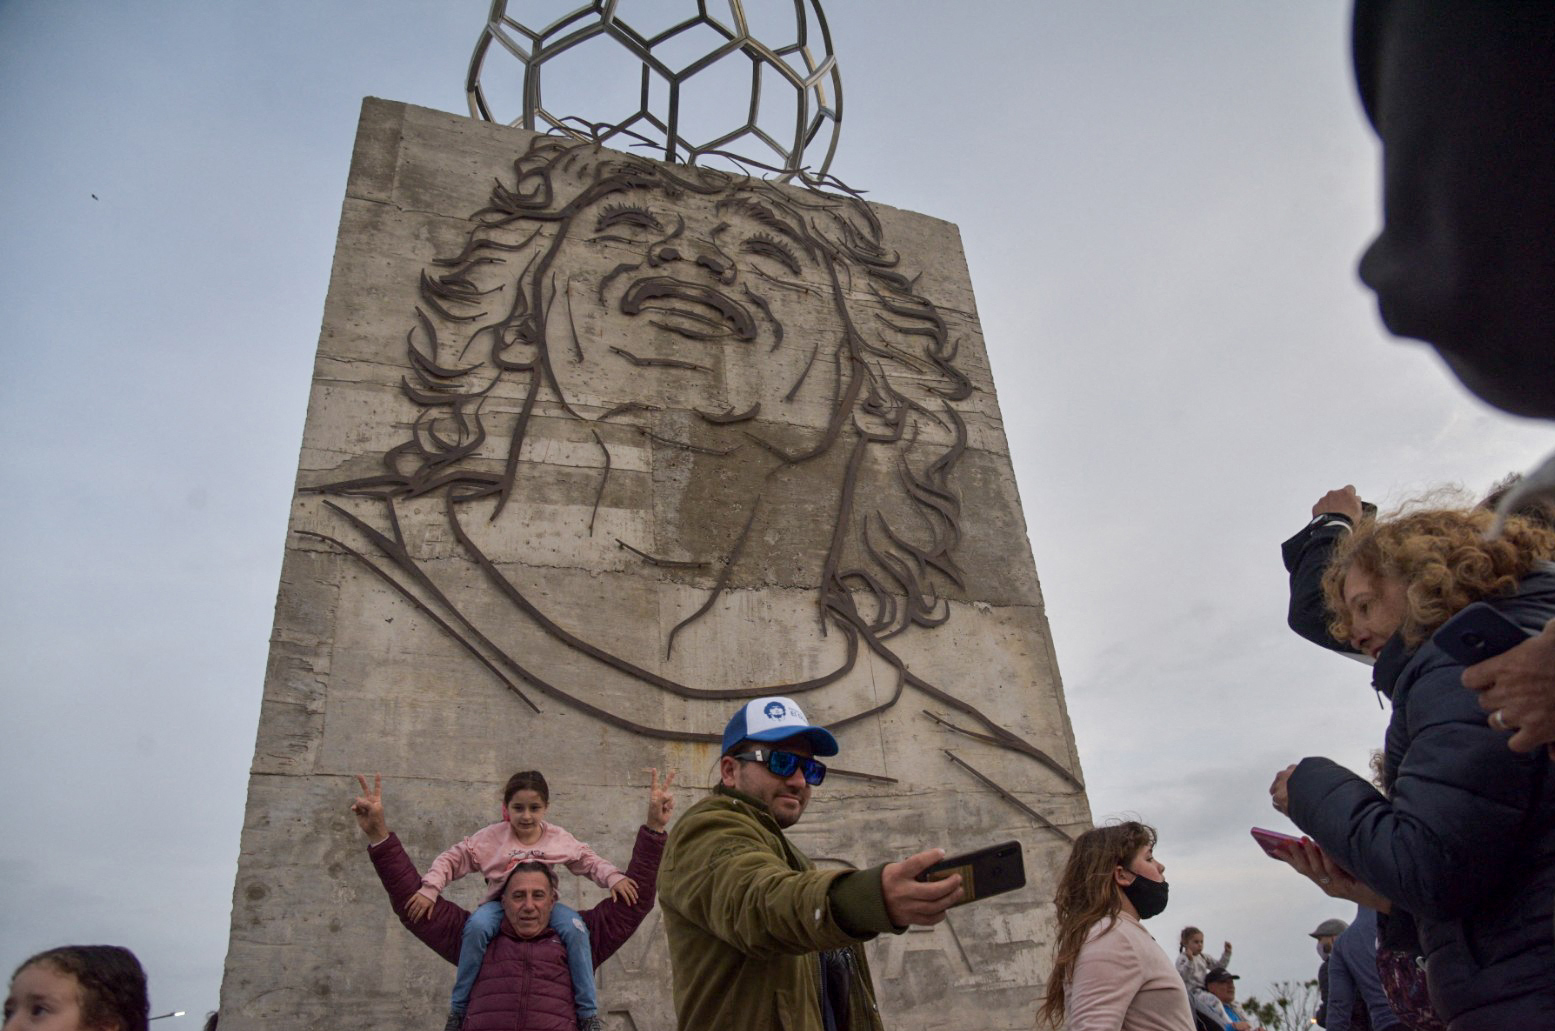 Un hombre se hace una selfie en el monumento a Diego Maradona desvelado en Santa Clara del Mar, Provincia de Buenos Aires, Argentina. (Foto Prensa Libre: AFP)